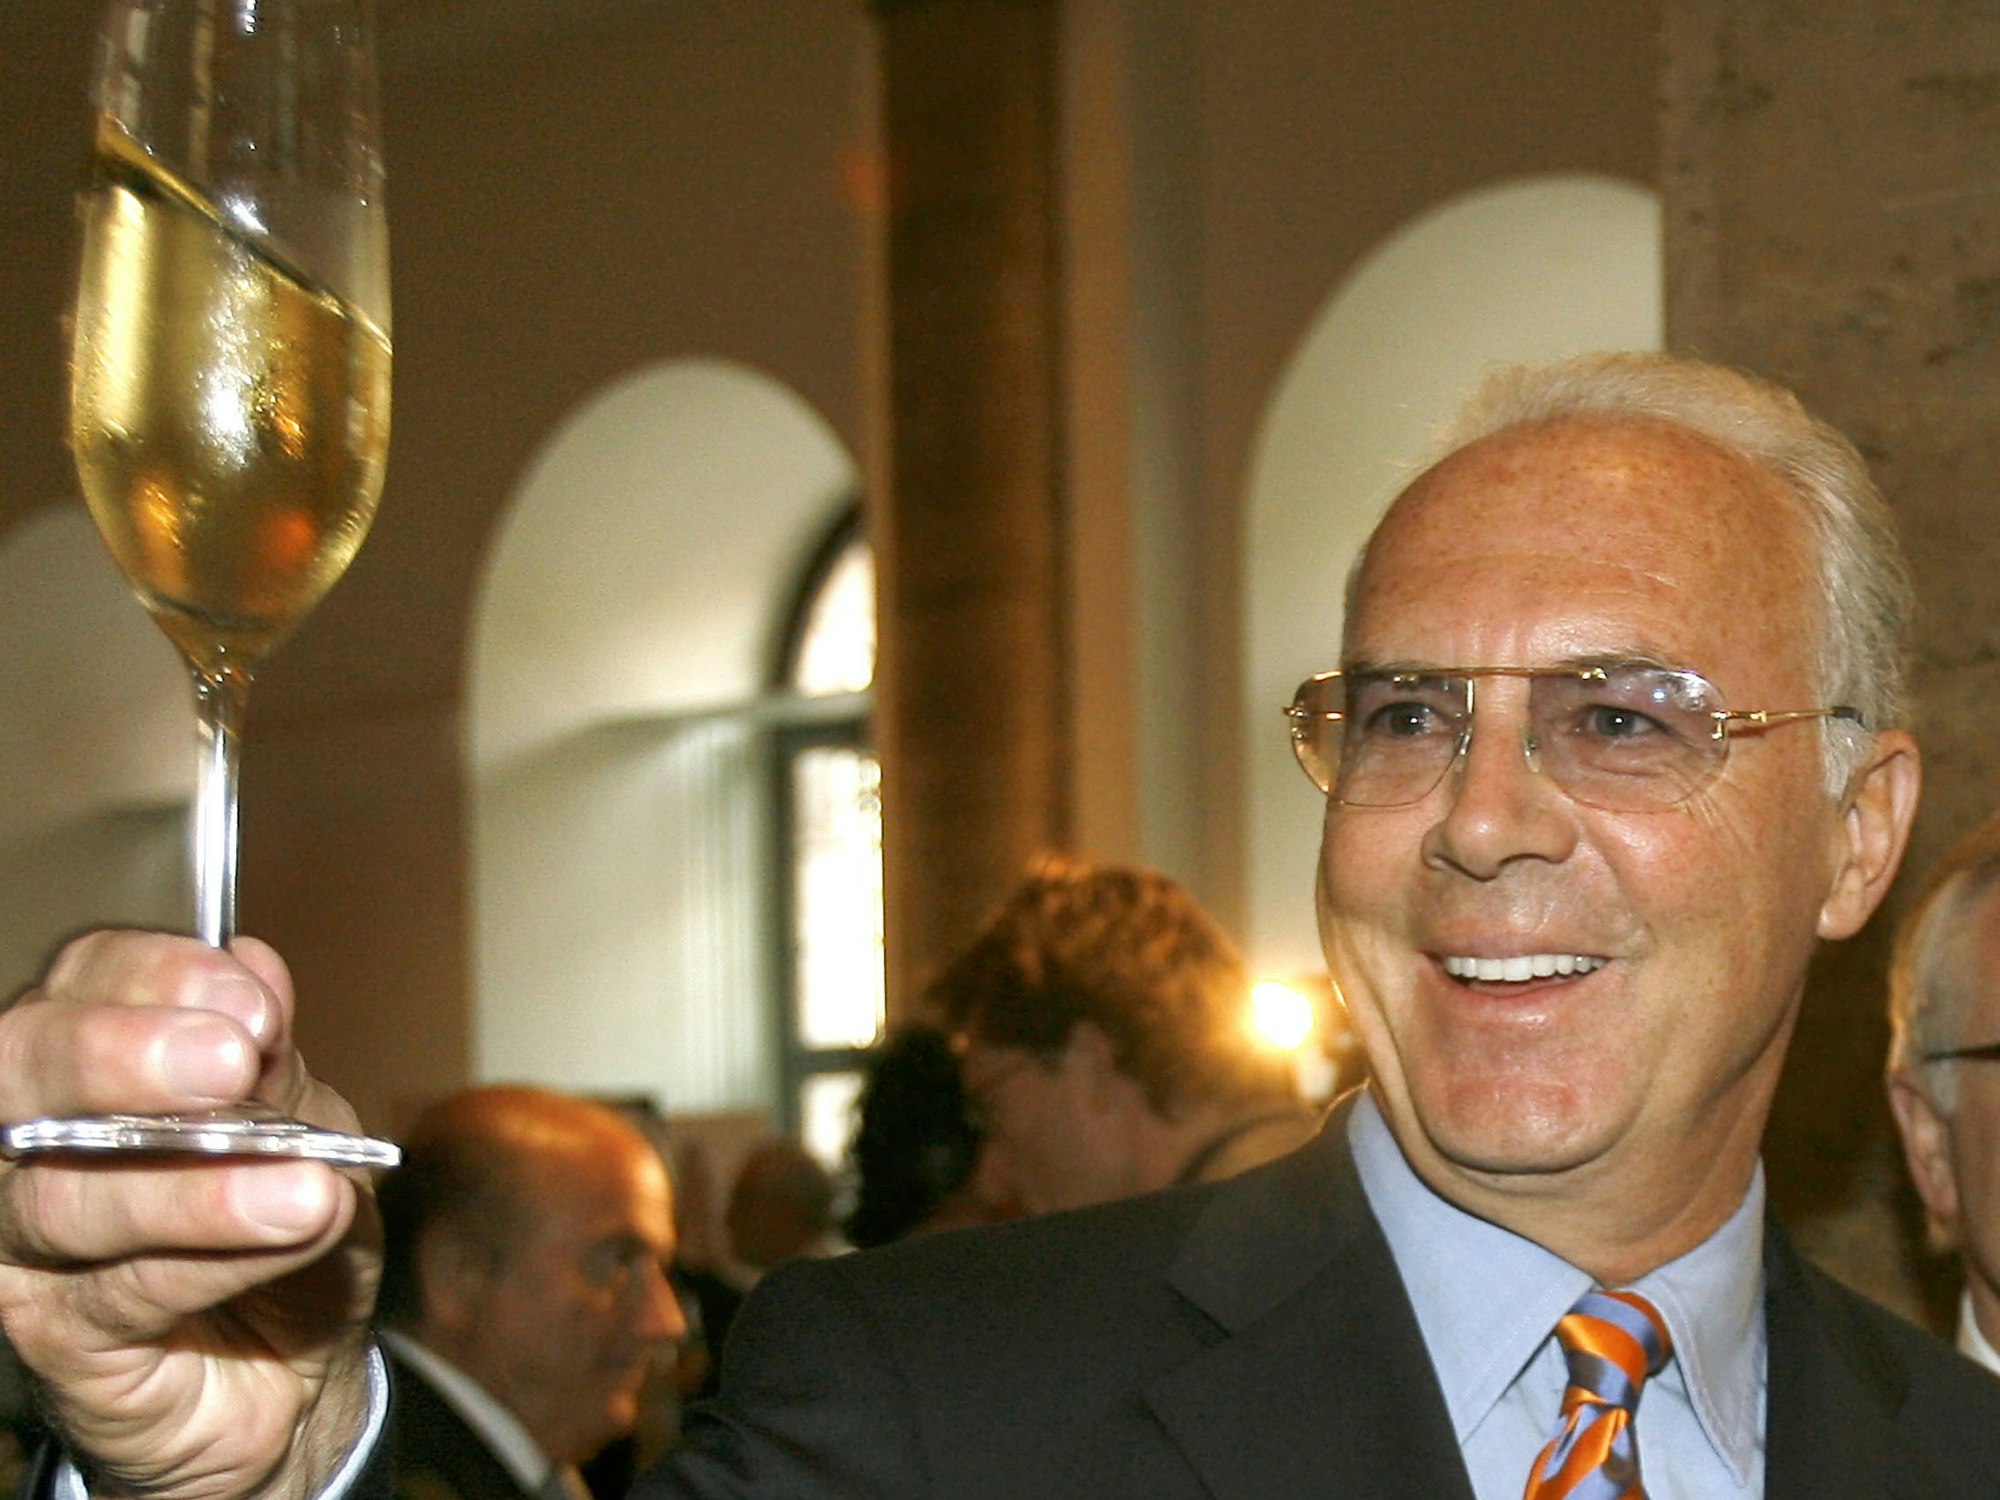 Lachend hebt WM-OK-Chef Franz Beckenbauer während eines Empfanges des DFB in Berlin ein Glas Champagner.